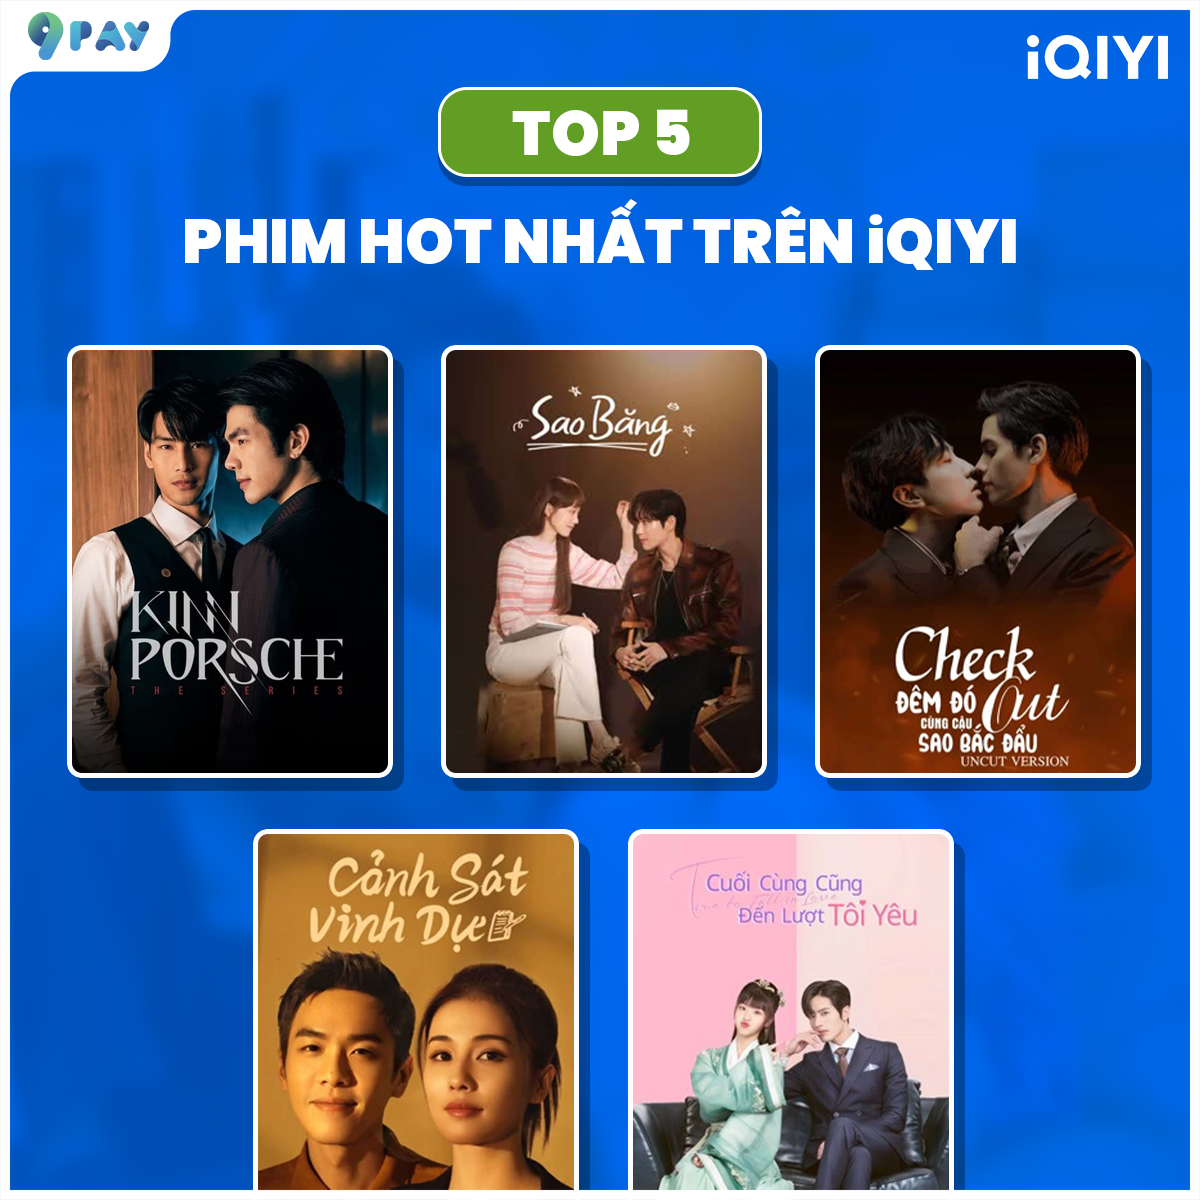 Top 5 phim ngôn tình và đam mỹ hot nhất trên iQIYI (Update 2022)